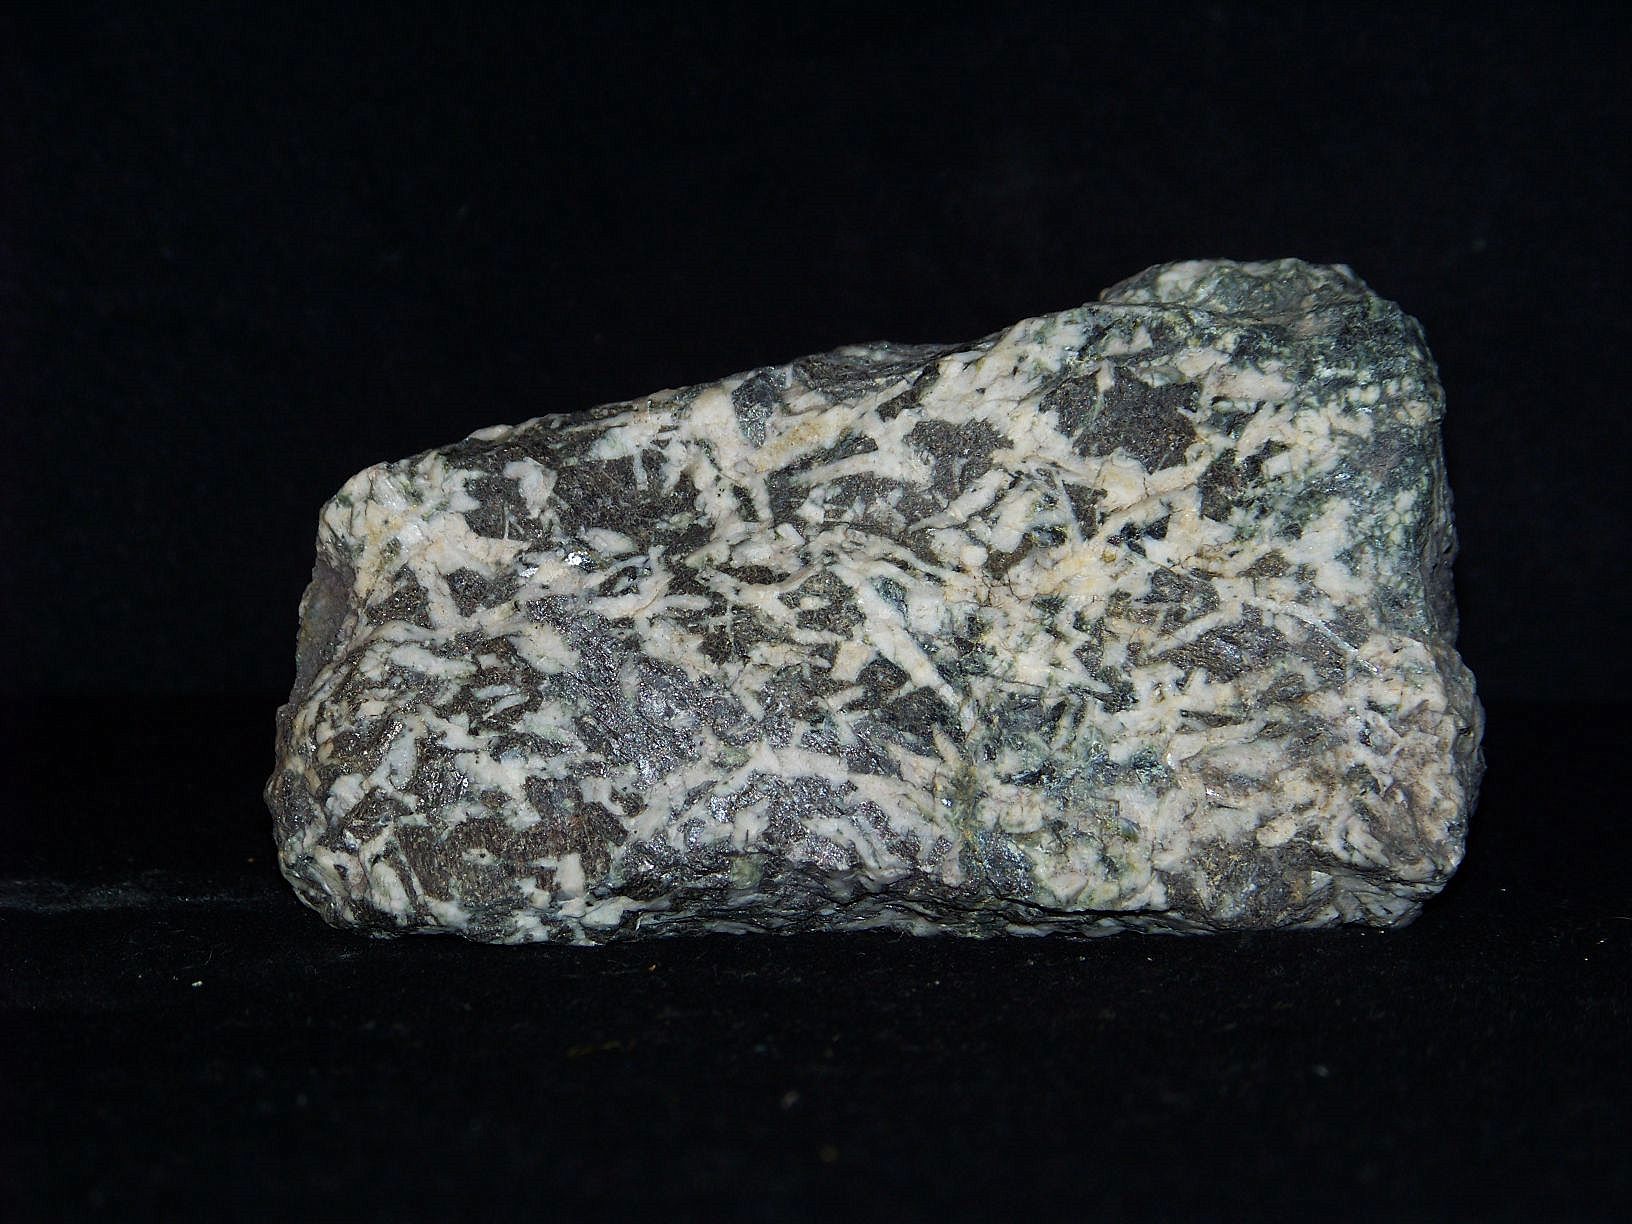 Ce gabbro a été trouvé dans la région de Gdynia-Orłowo, en Pologne. Cette roche plutonique s'est formée à la suite d'une cristallisation de magma en profondeur. © Piotr Sosnowski, Wikimedia Commons, GNU 1.2